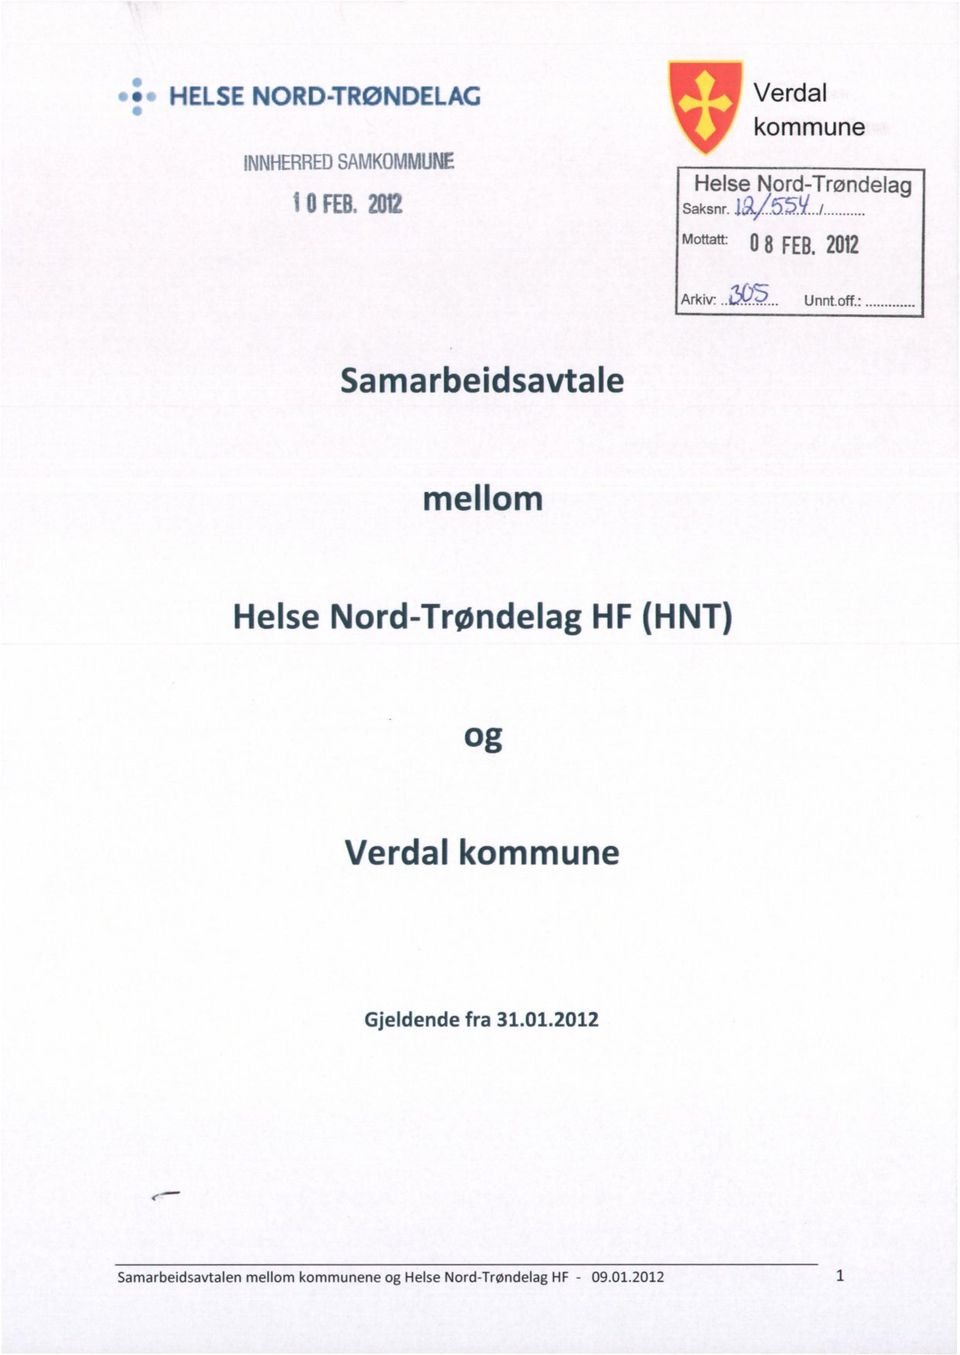 off Samarbeidsavtale mellom Helse Nord-Trøndelag HF (HNT) og